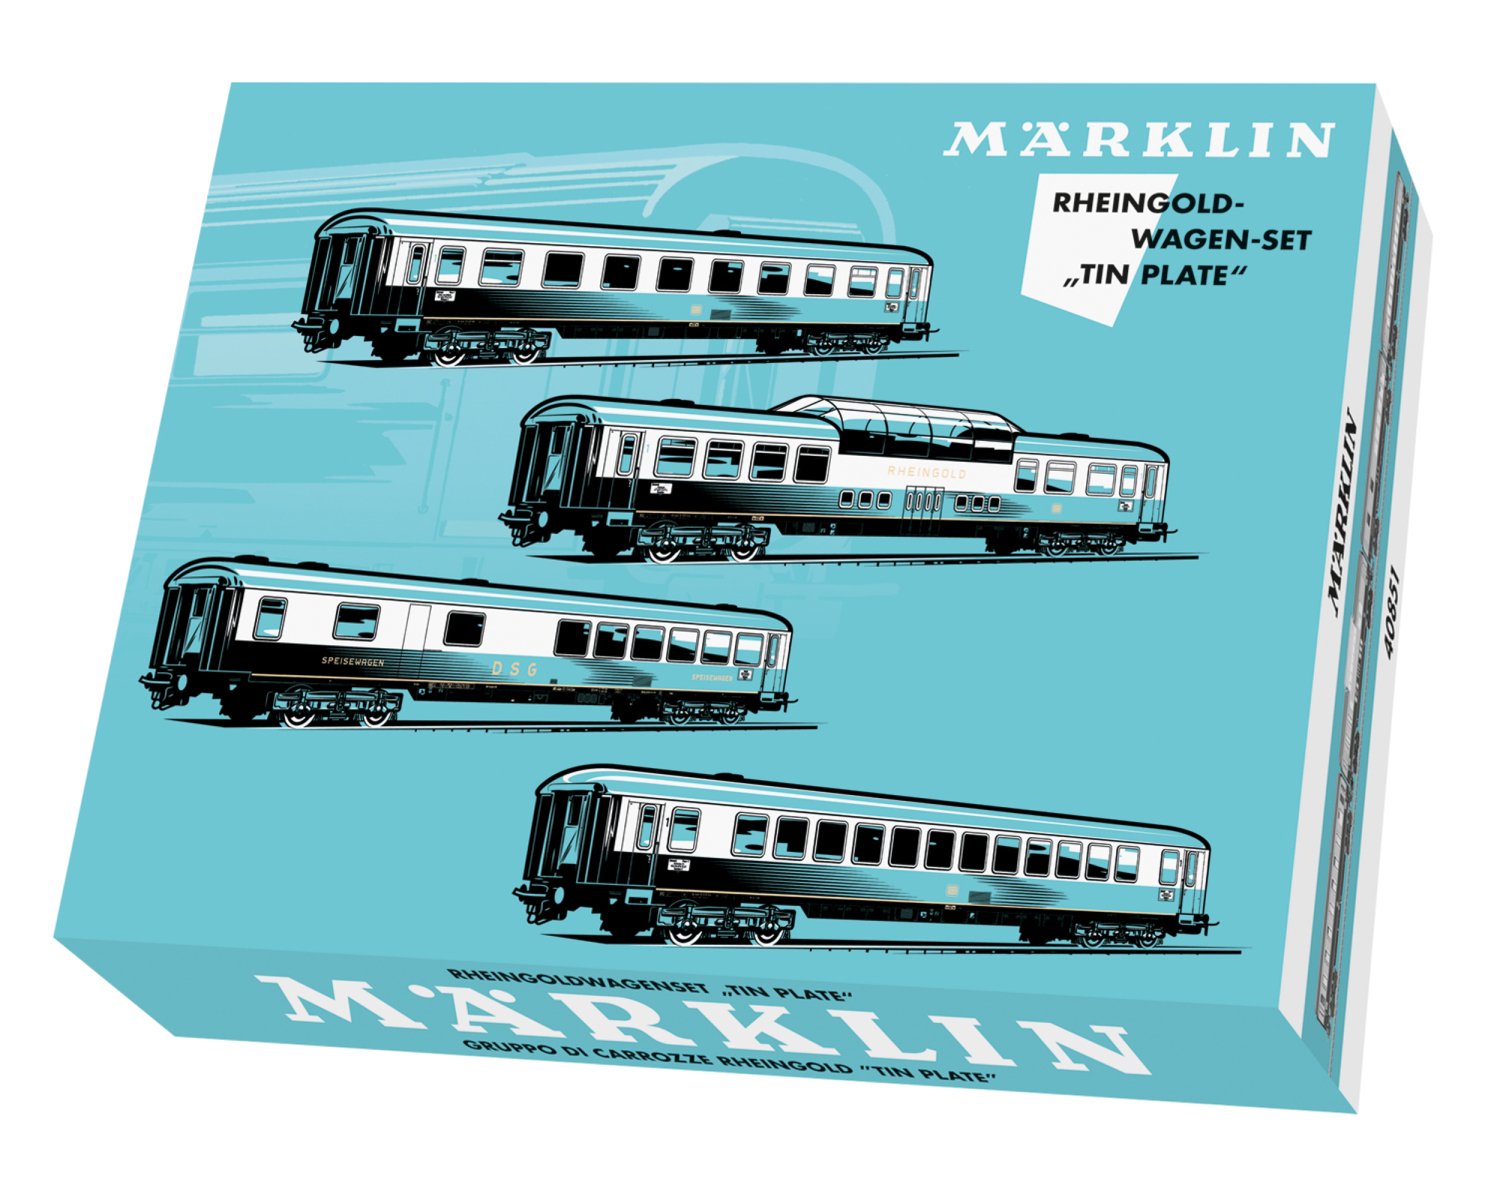 メルクリン(Marklin) HO ラインゴルト客車セット 40851 | 欧米型鉄道 